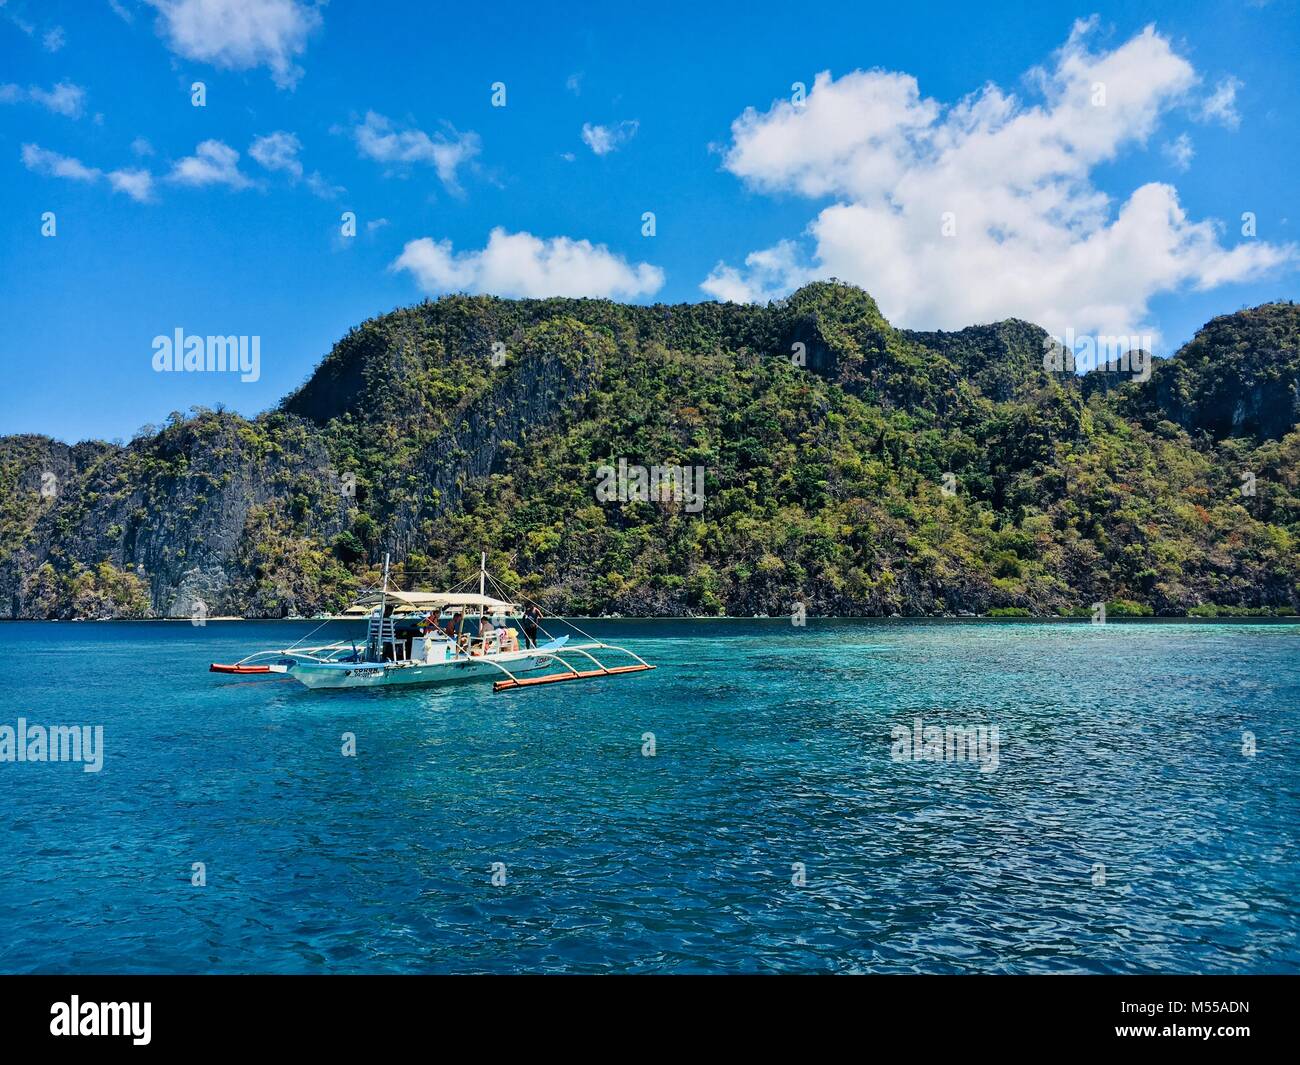 La beauté de l'île de Coron, Philippines Banque D'Images